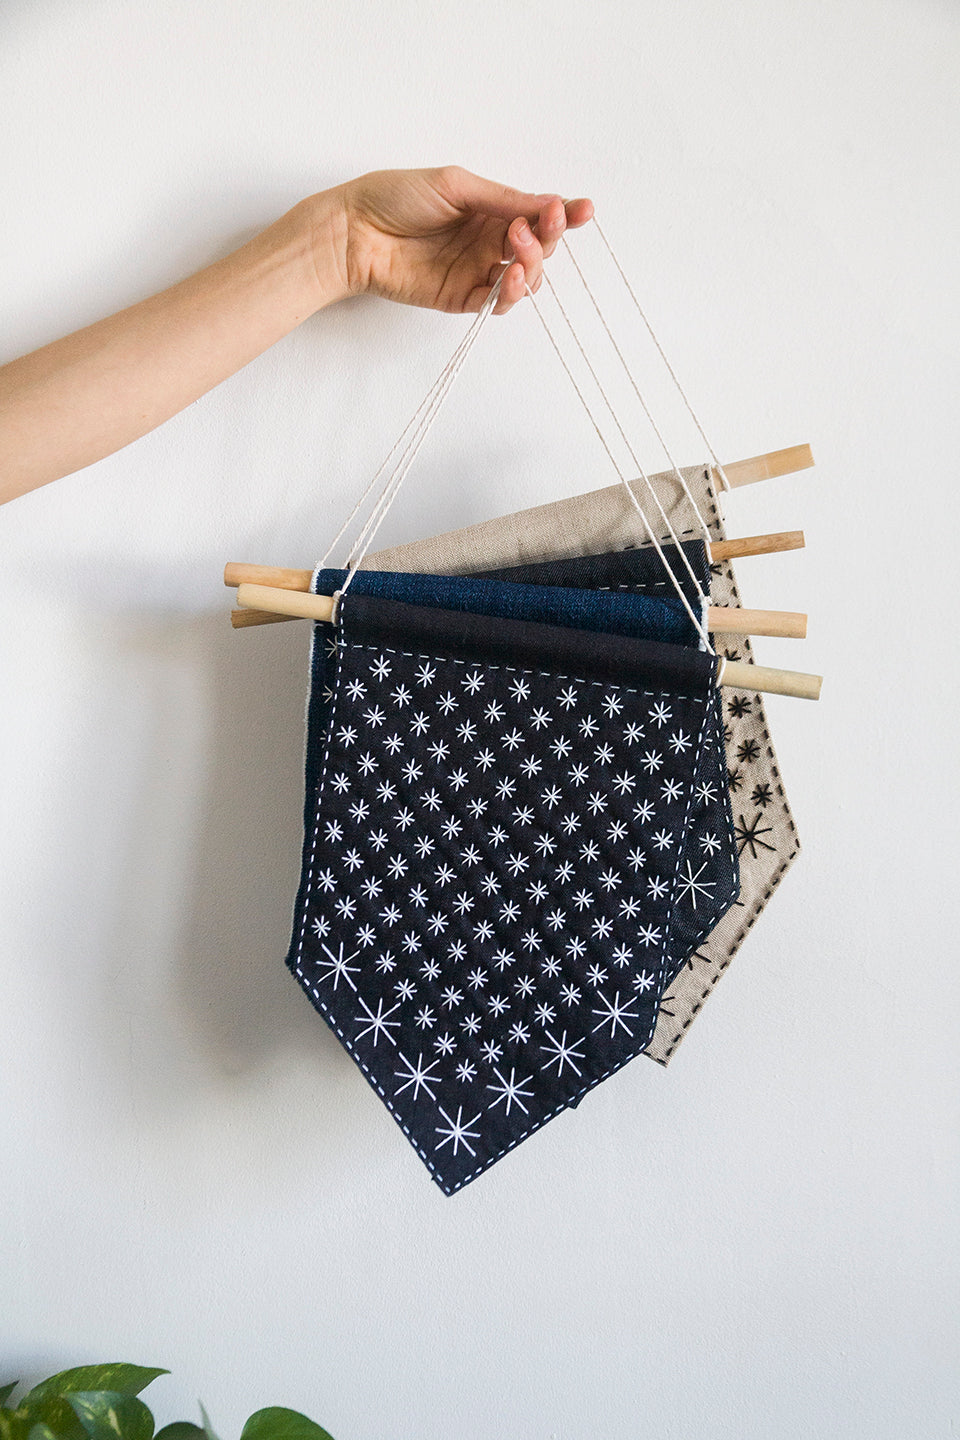 DIY Starry Sashiko Banner Kit